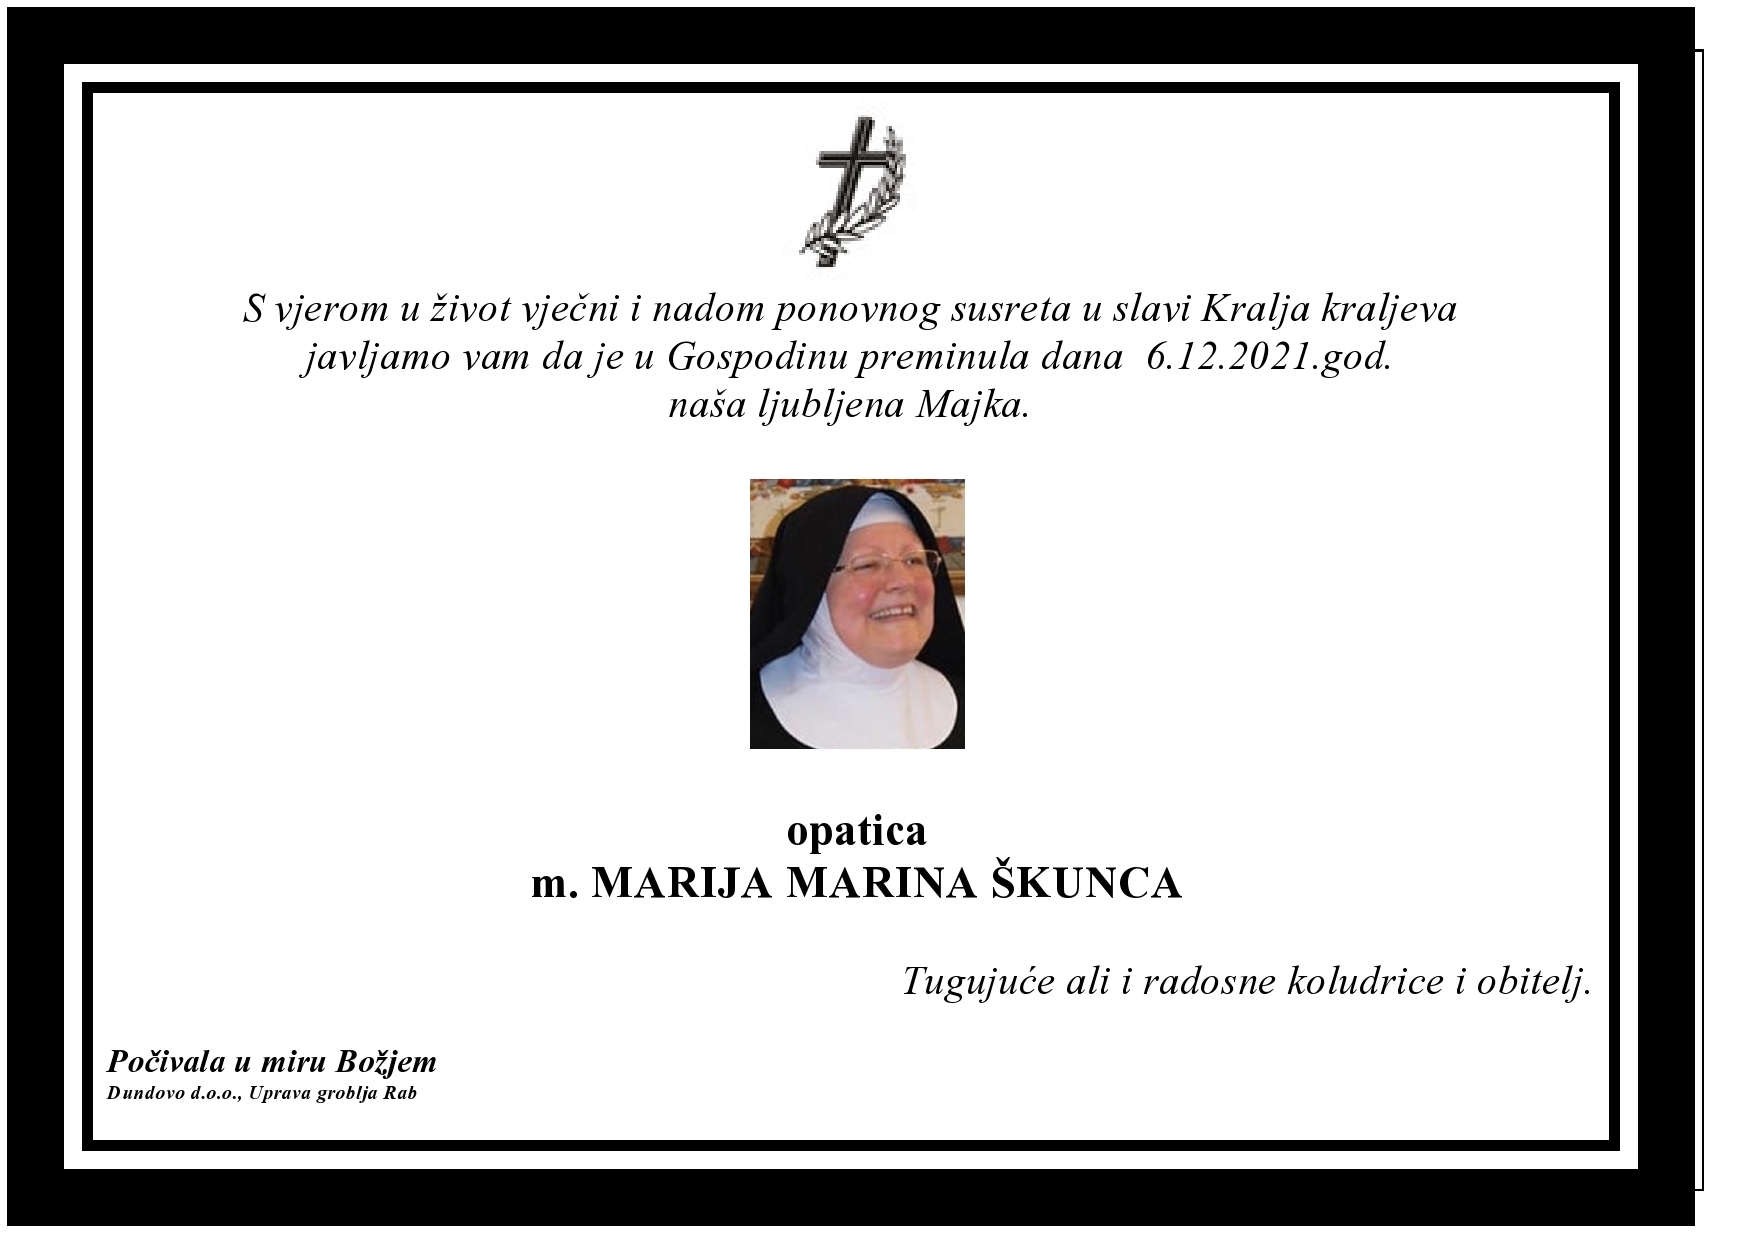 opatica m. MARIJA MARINA ŠKUNCA